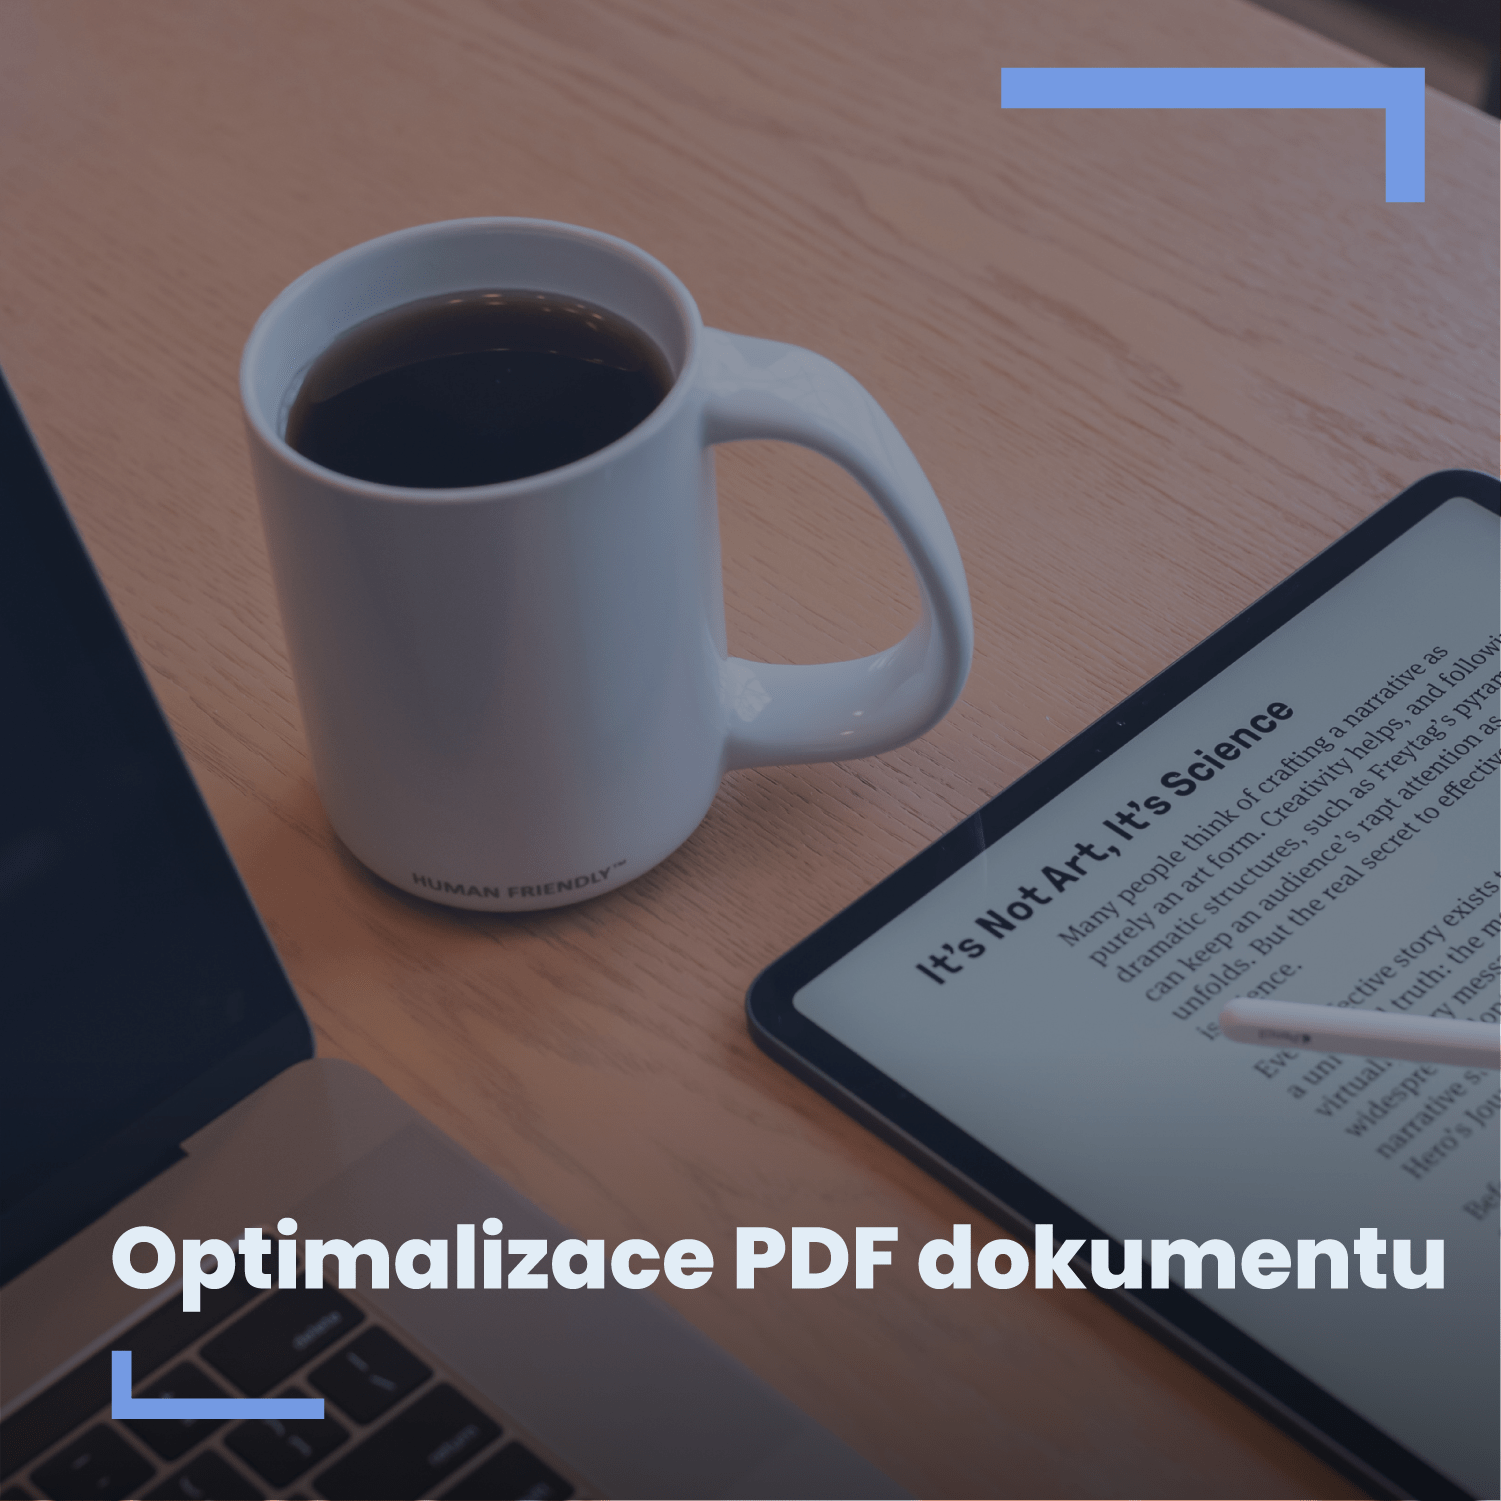 Optimalizace PDF dokumentu